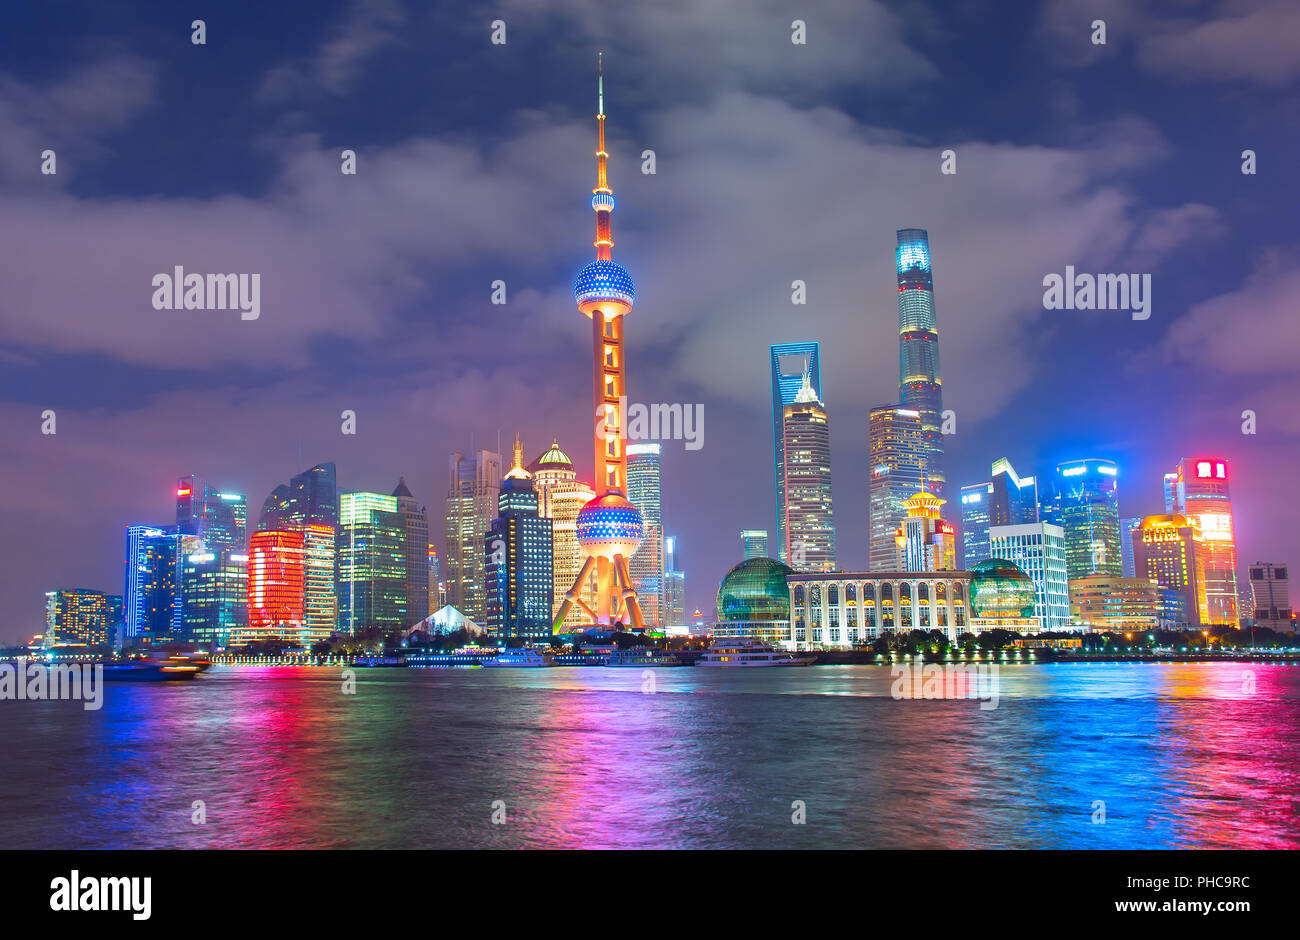 Night skyline of Shanghai. China Stock Photo